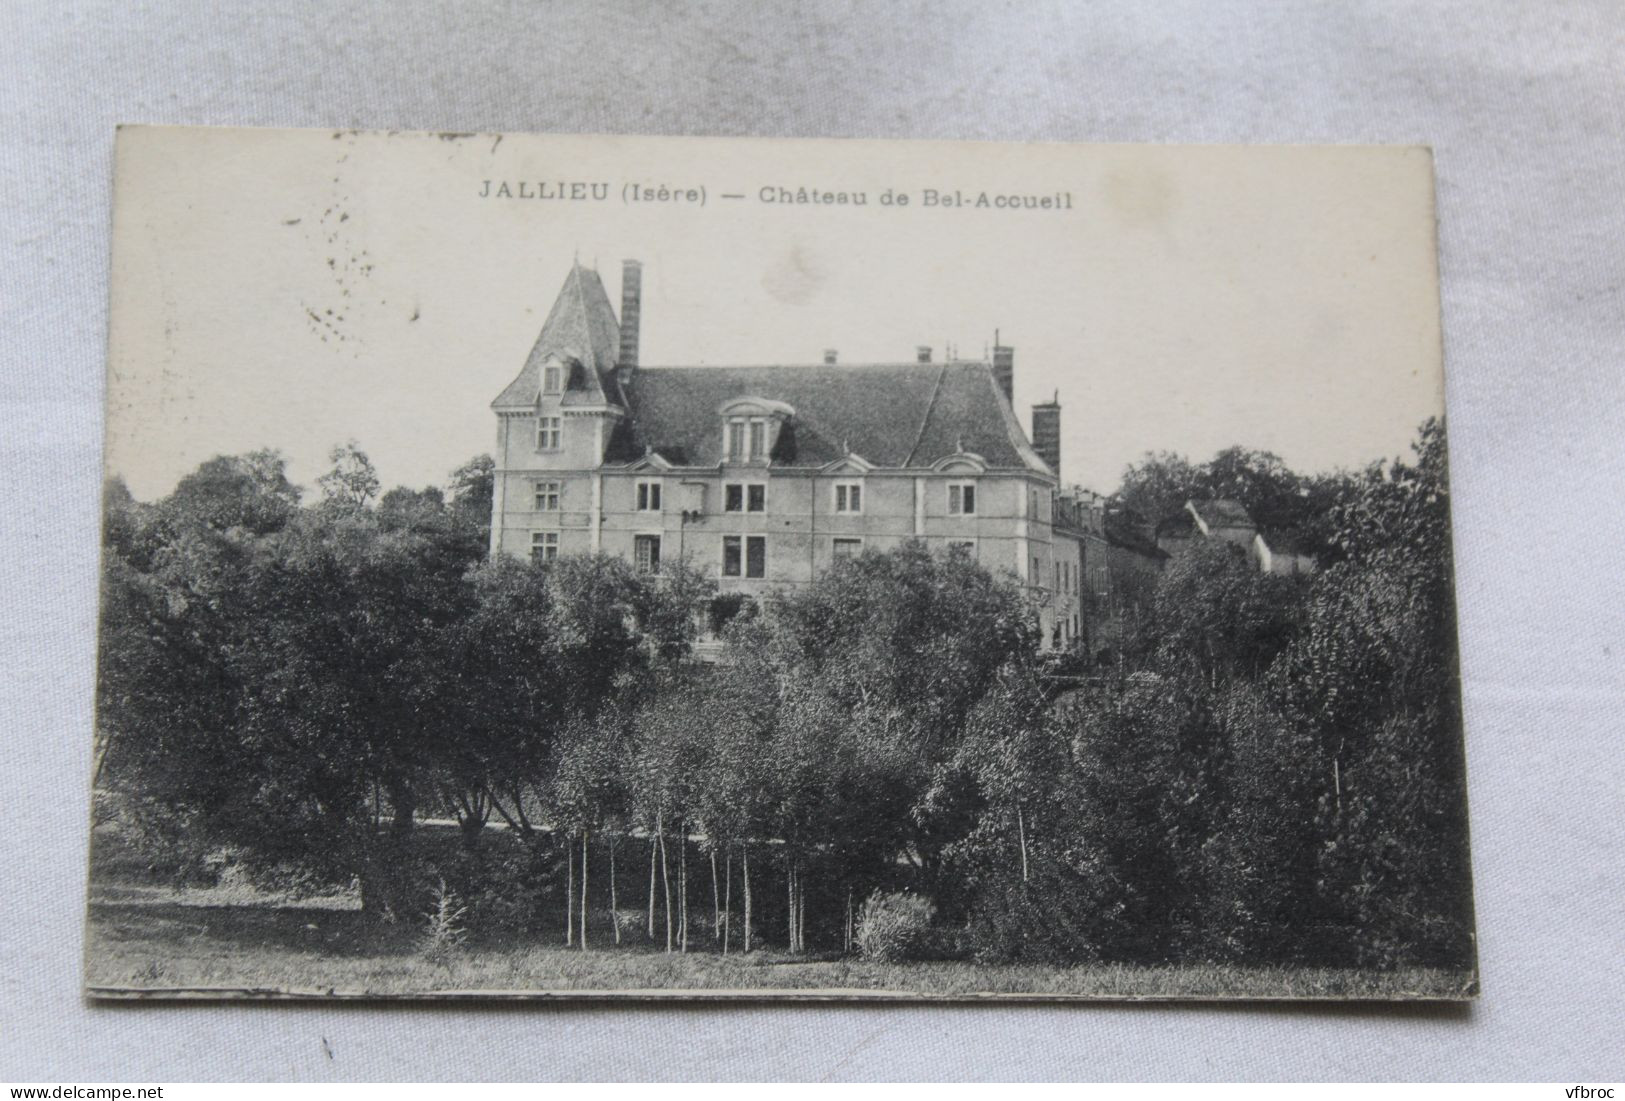 Jallieu, Château De Bel Accueil, Isère 38 - Jallieu